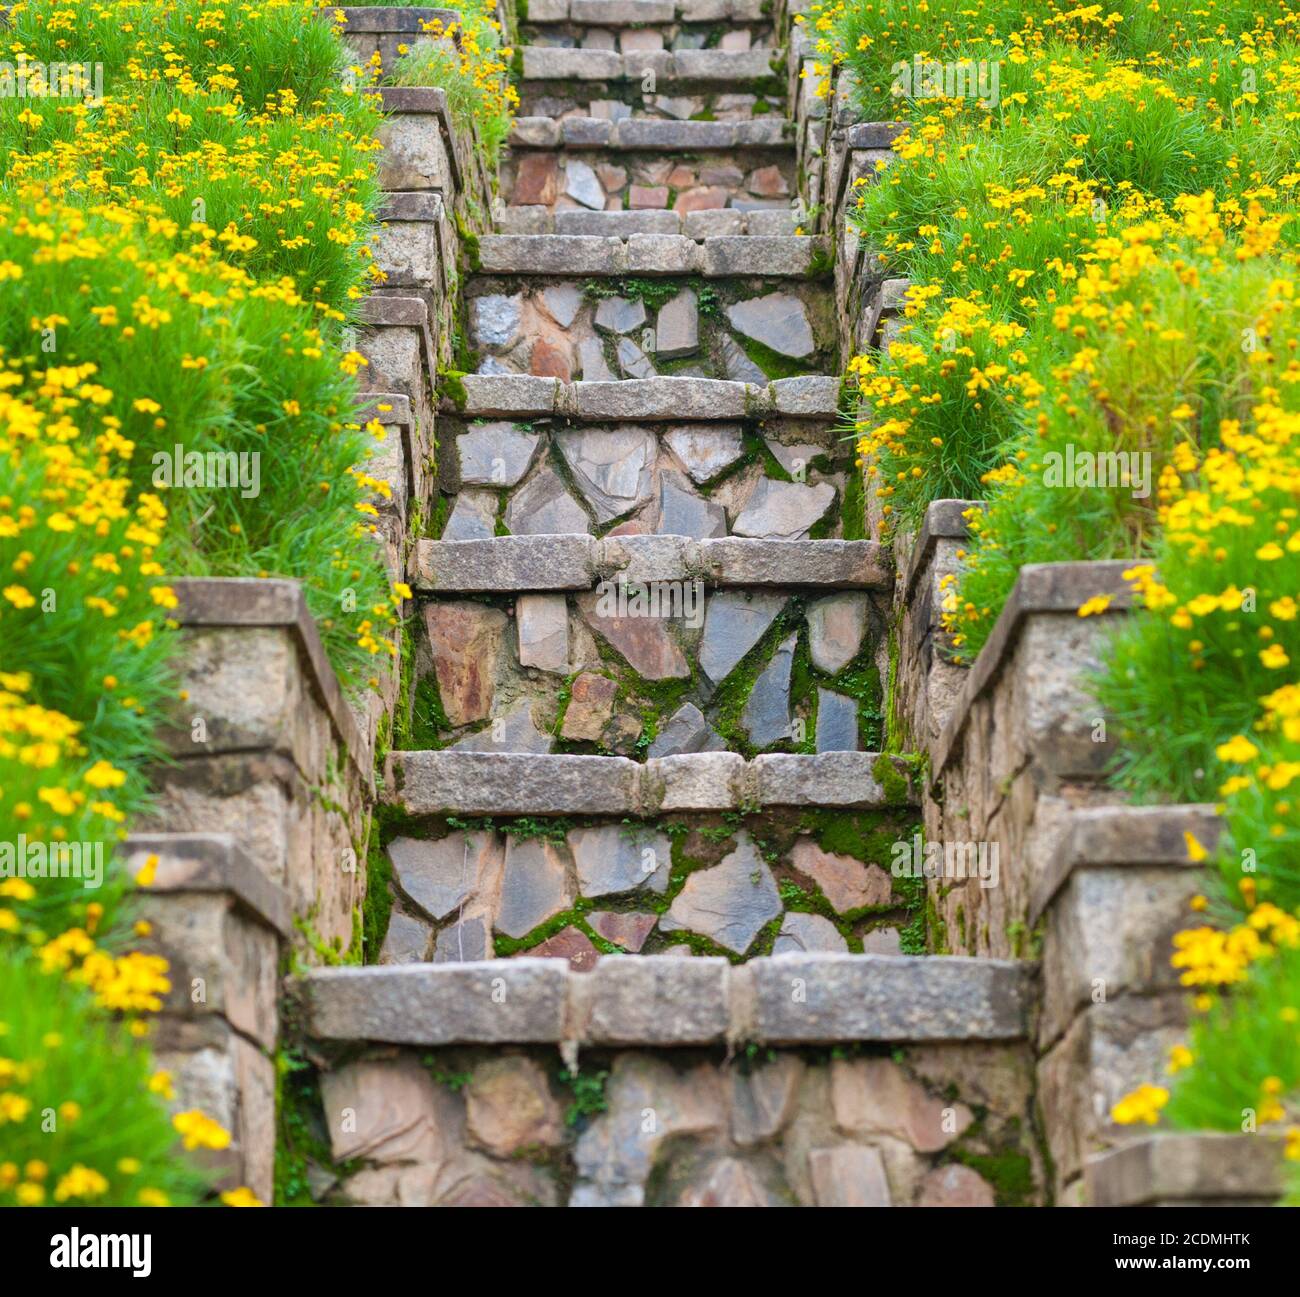 Moosige Steintreppe zwischen gelben Blumen Stockfoto